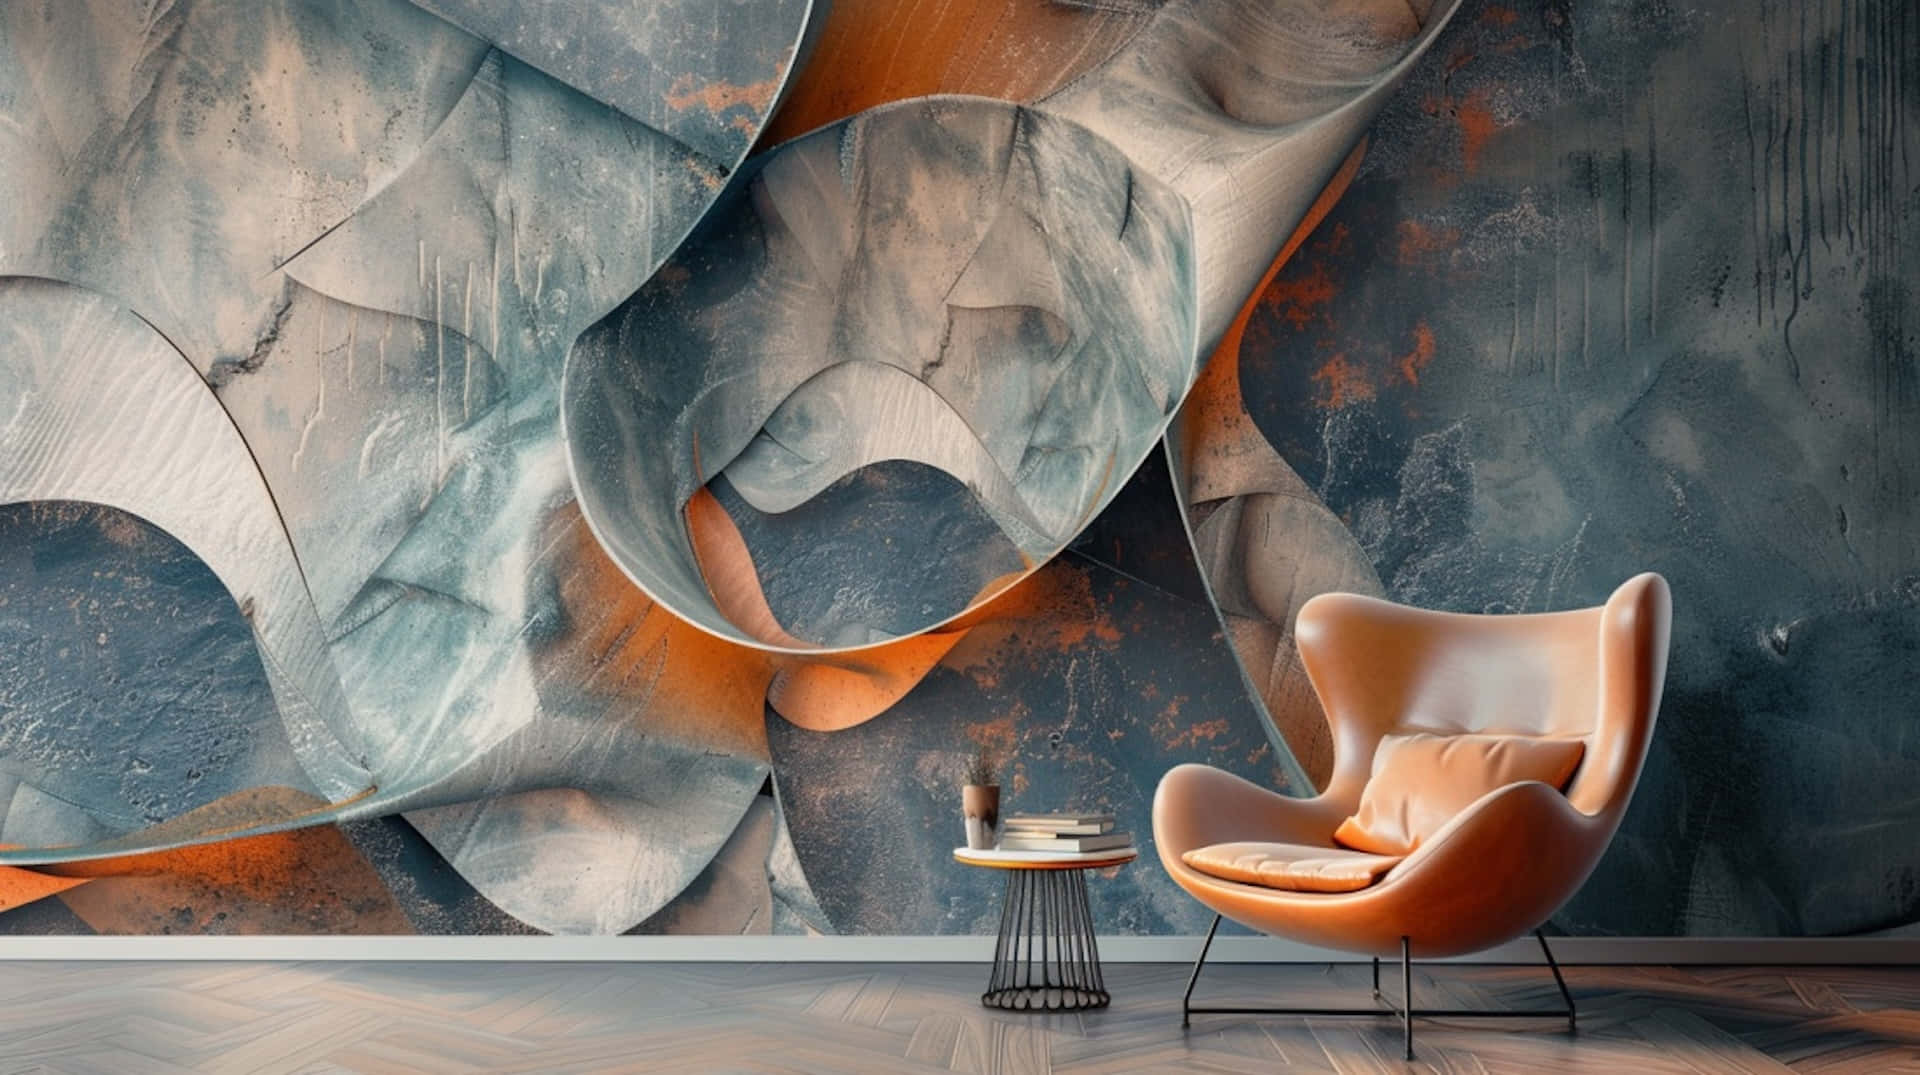 Abstract Muralwith Modern Furniture.jpg Wallpaper